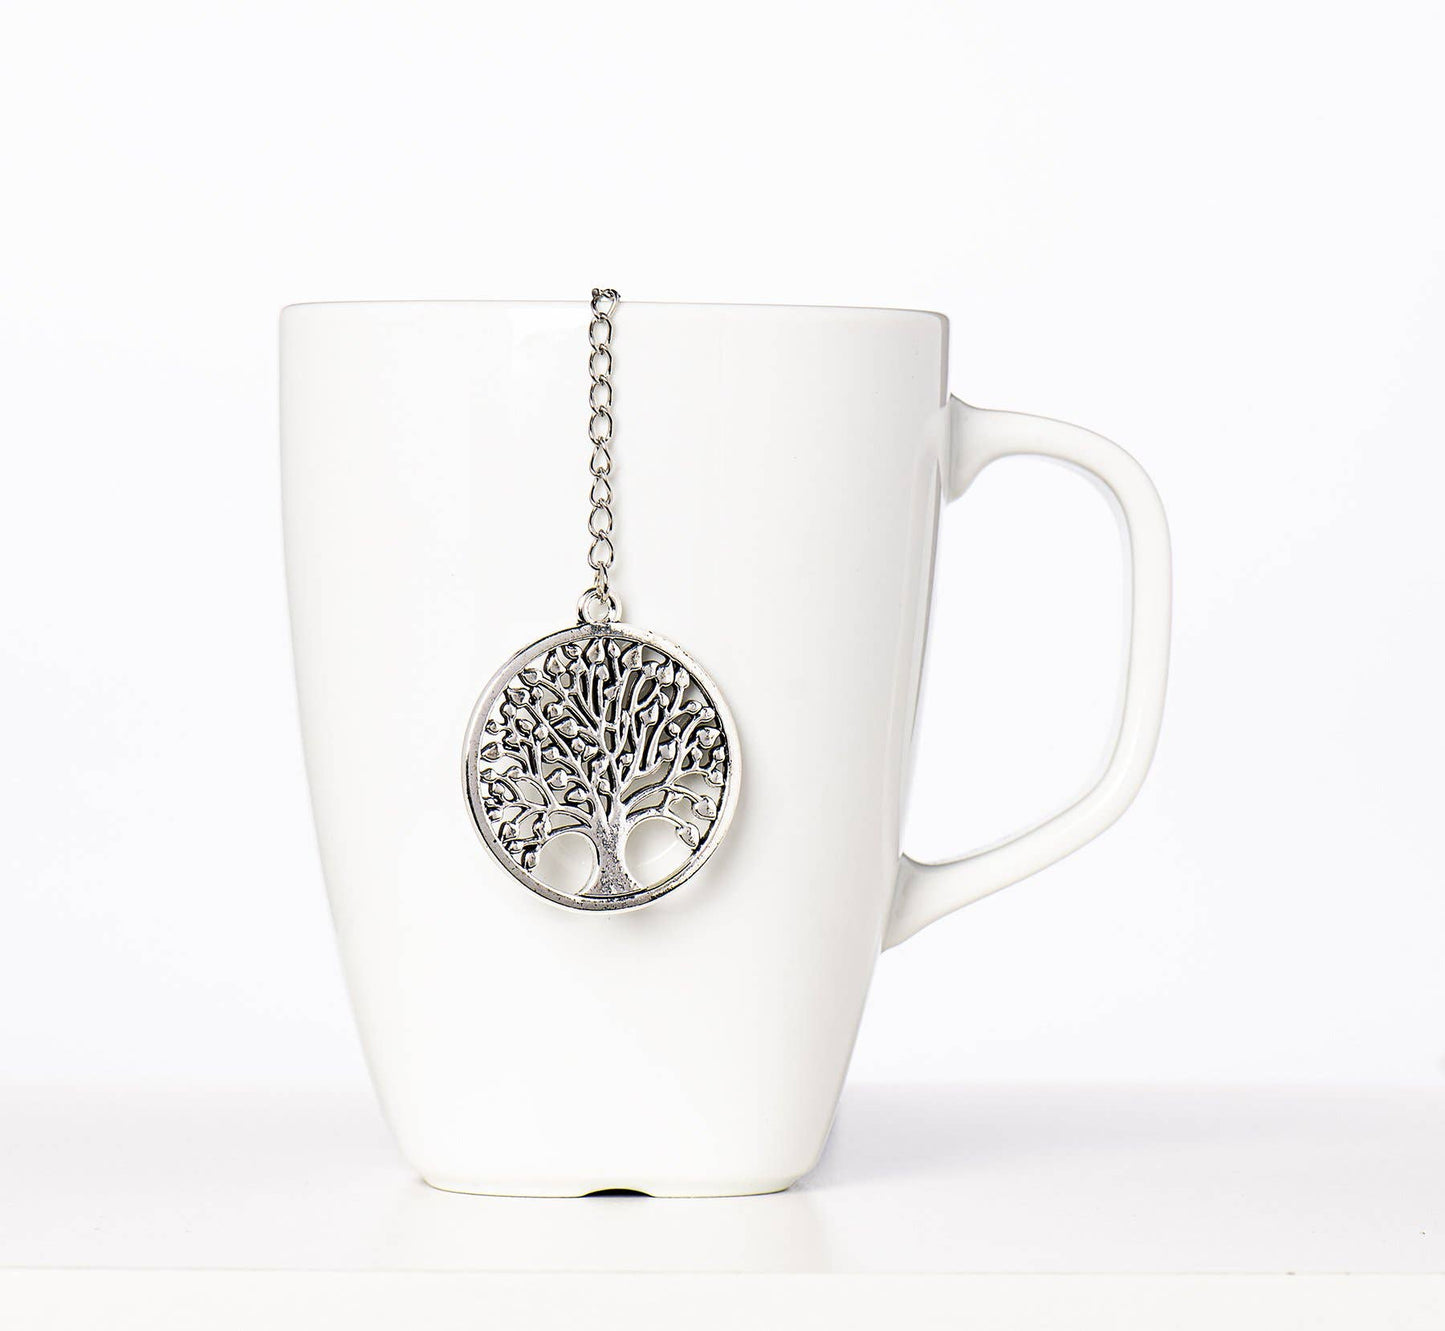 Loose Leaf Tea Infuser, Tree of Life Charm Ball, Tea Gift